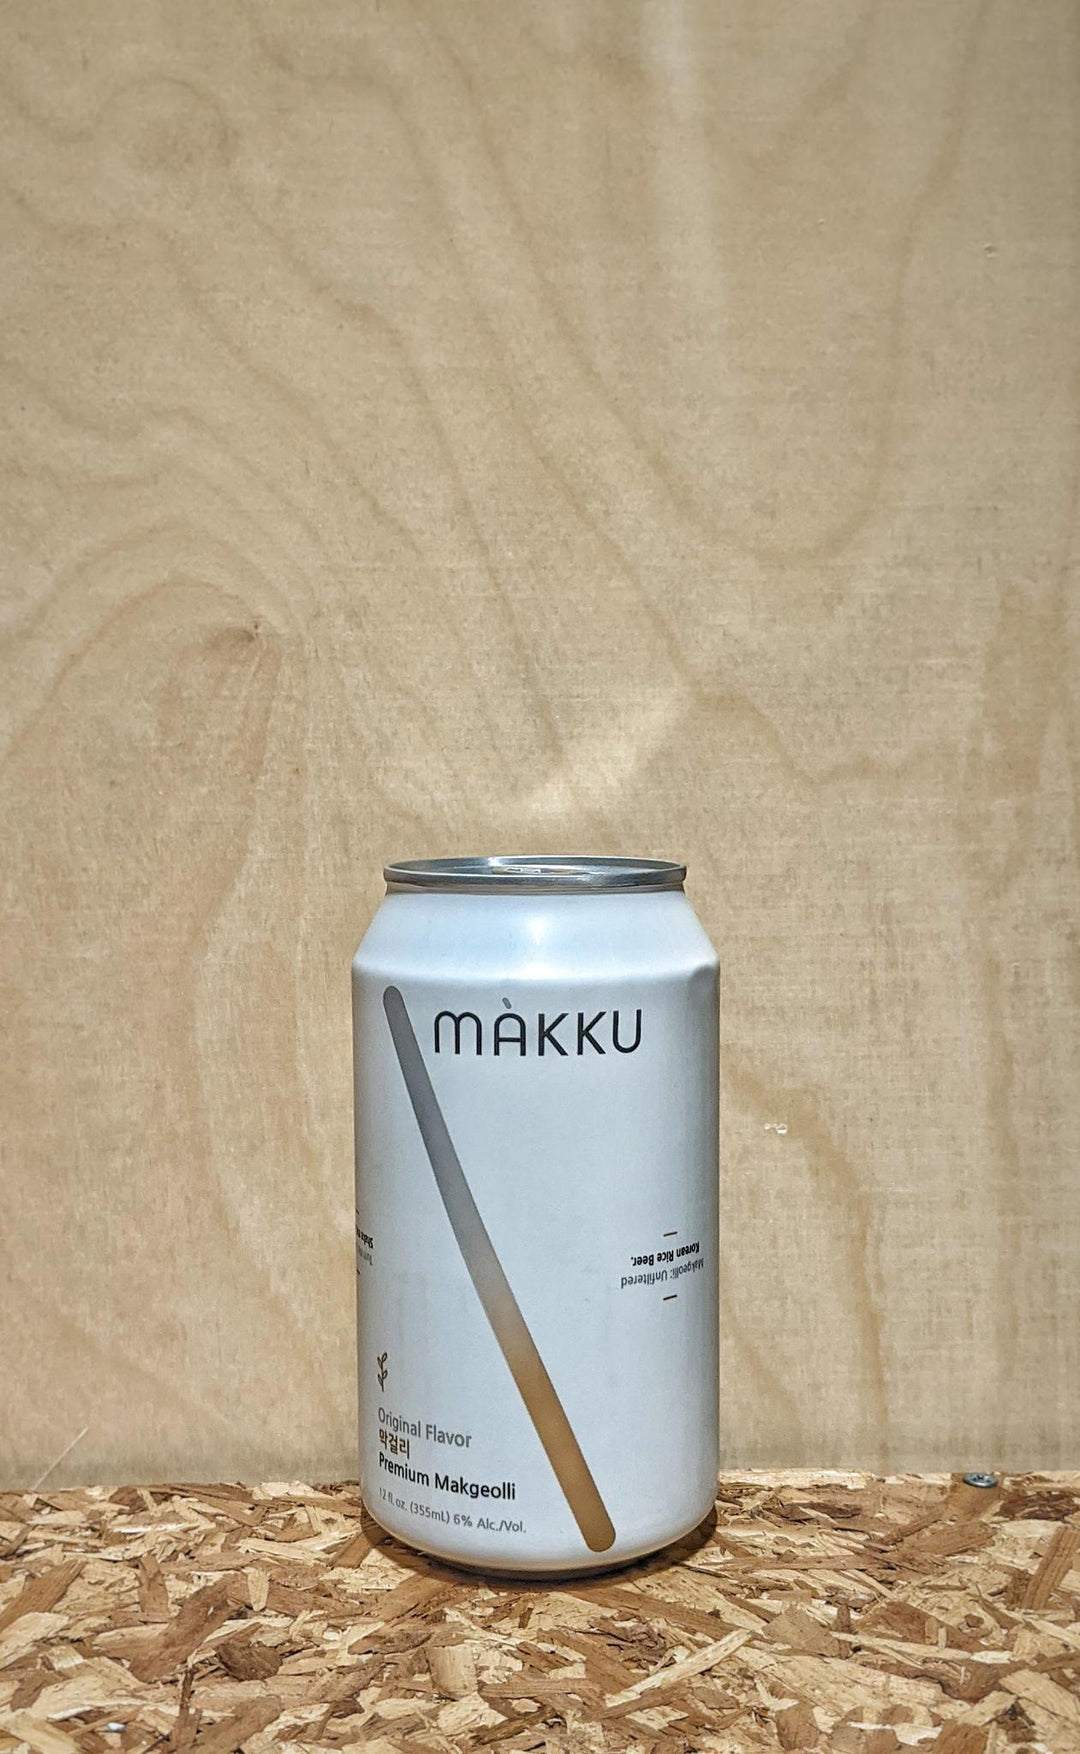 Makku Original Makgeolli Korean Rice Beer